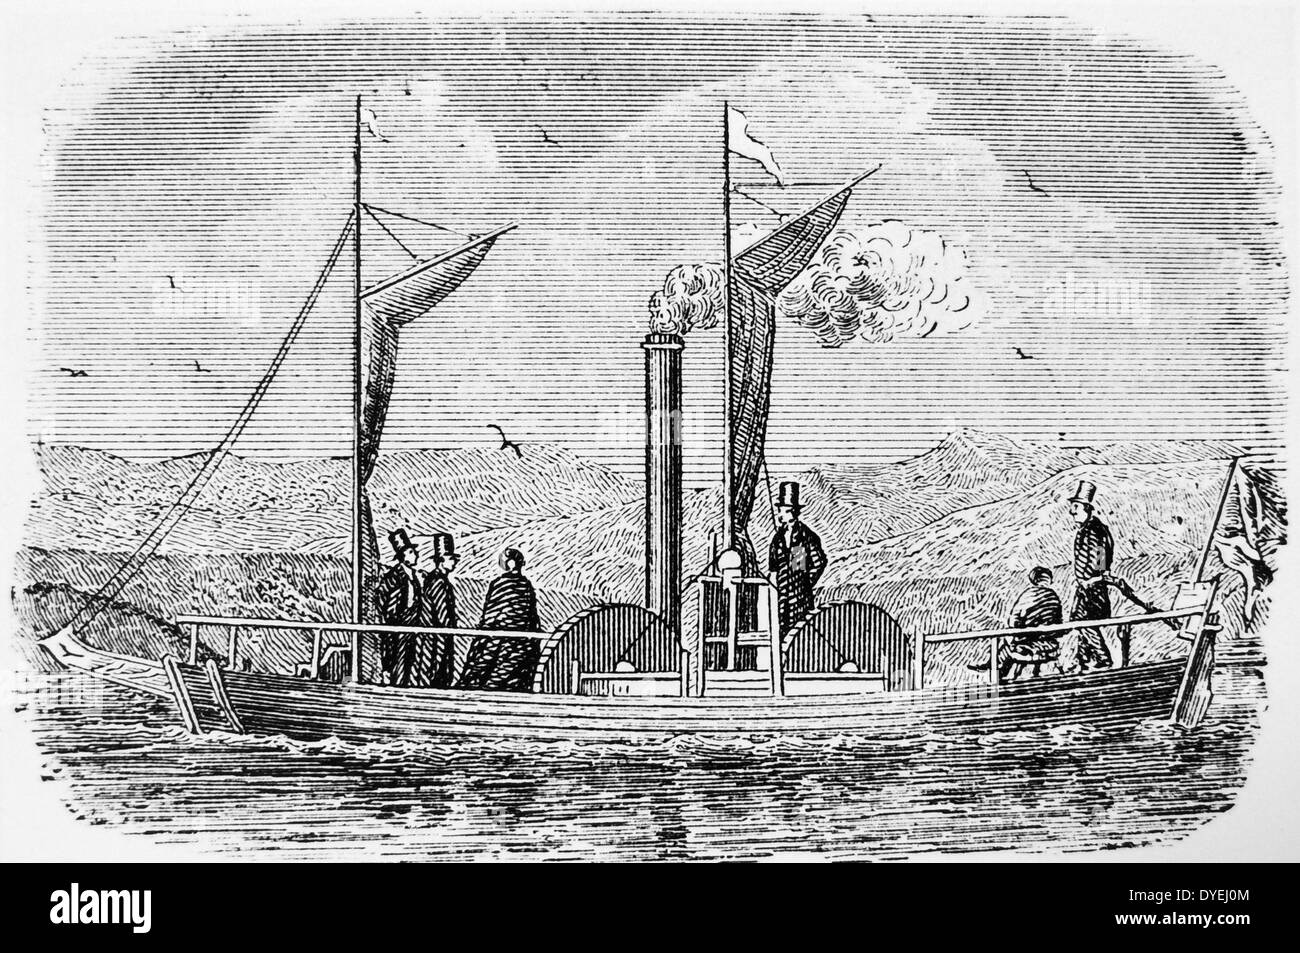 Experimentelle Reise auf See Dalswinton, Schottland 1788 von Patrick Miller und William Symington (1763-1831) Wenn Sie erfolgreich getestet ersten Symington's Steamboat. Der Dichter Robert Burns ein Passagier auf dieser Reise war. Kupferstich, London, c 1880. Stockfoto